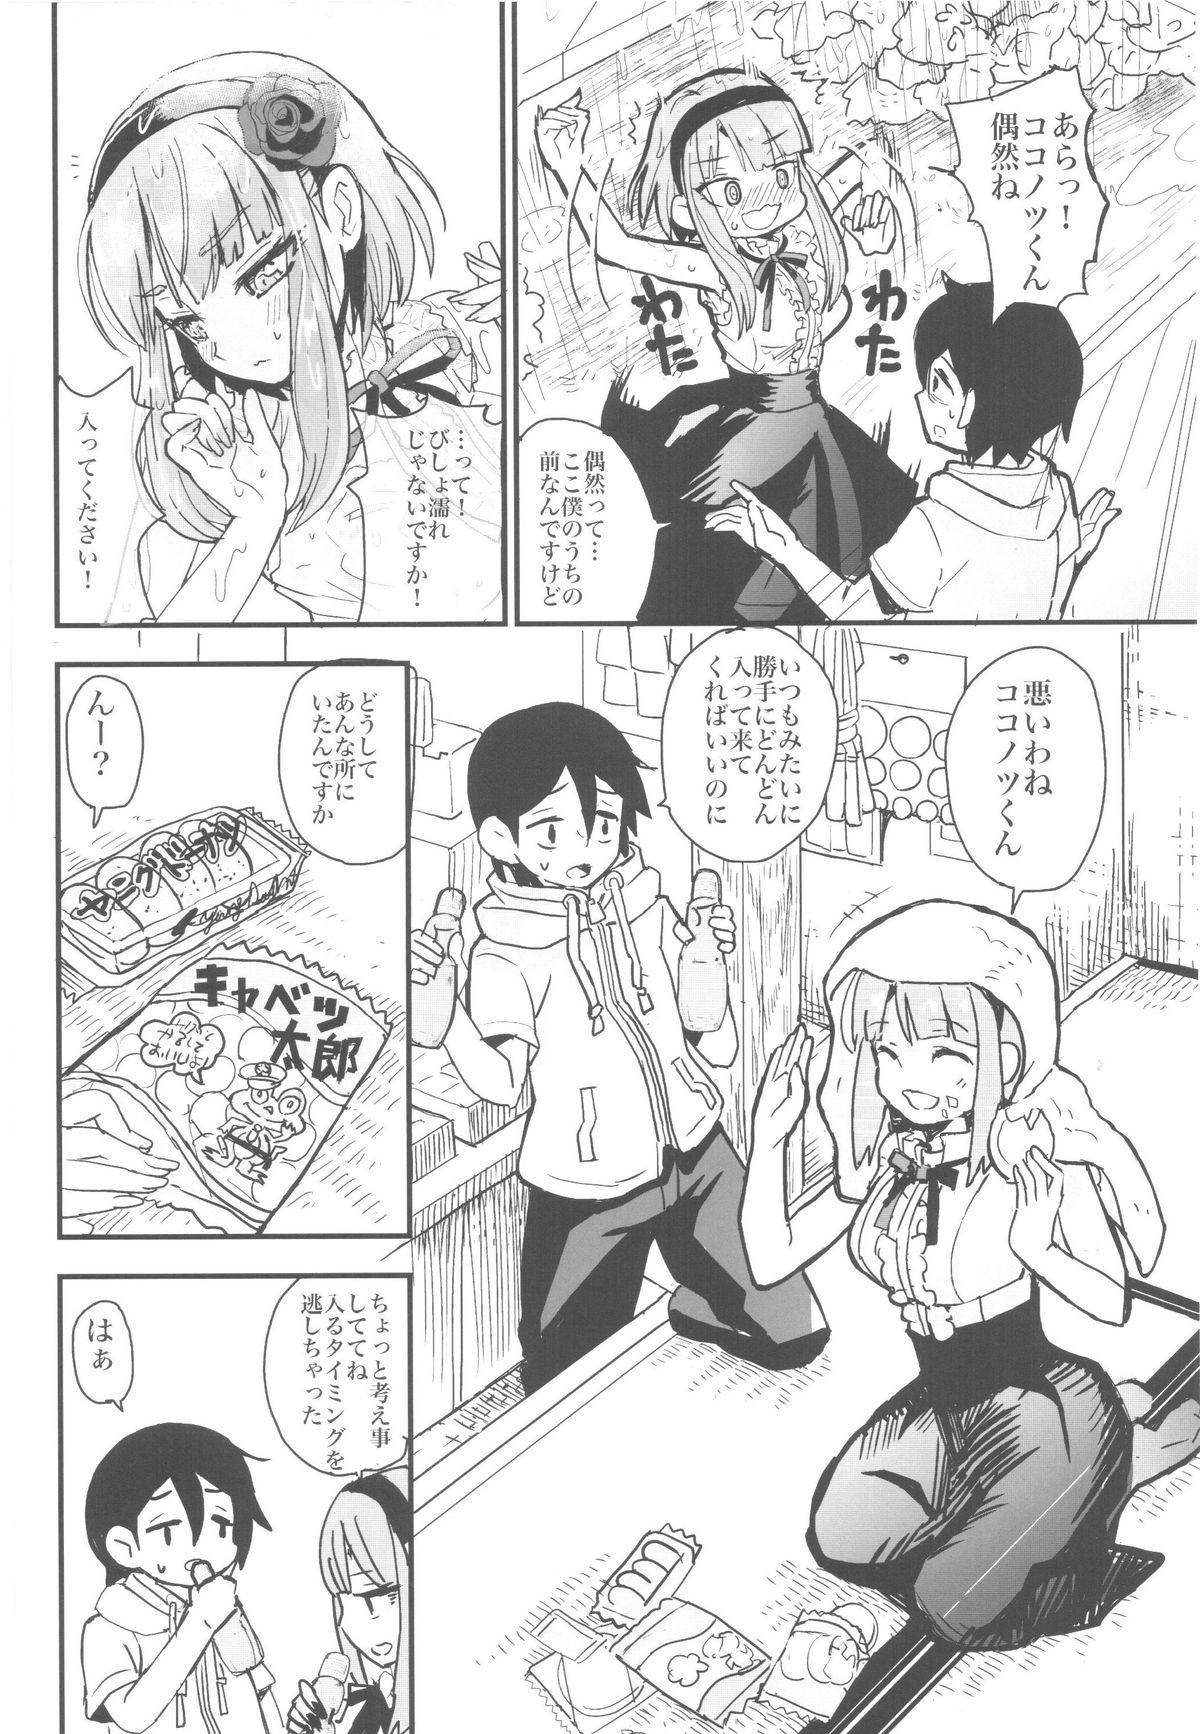 Novinhas Hotaru-san no Katei no Jijou - Dagashi kashi Made - Page 5